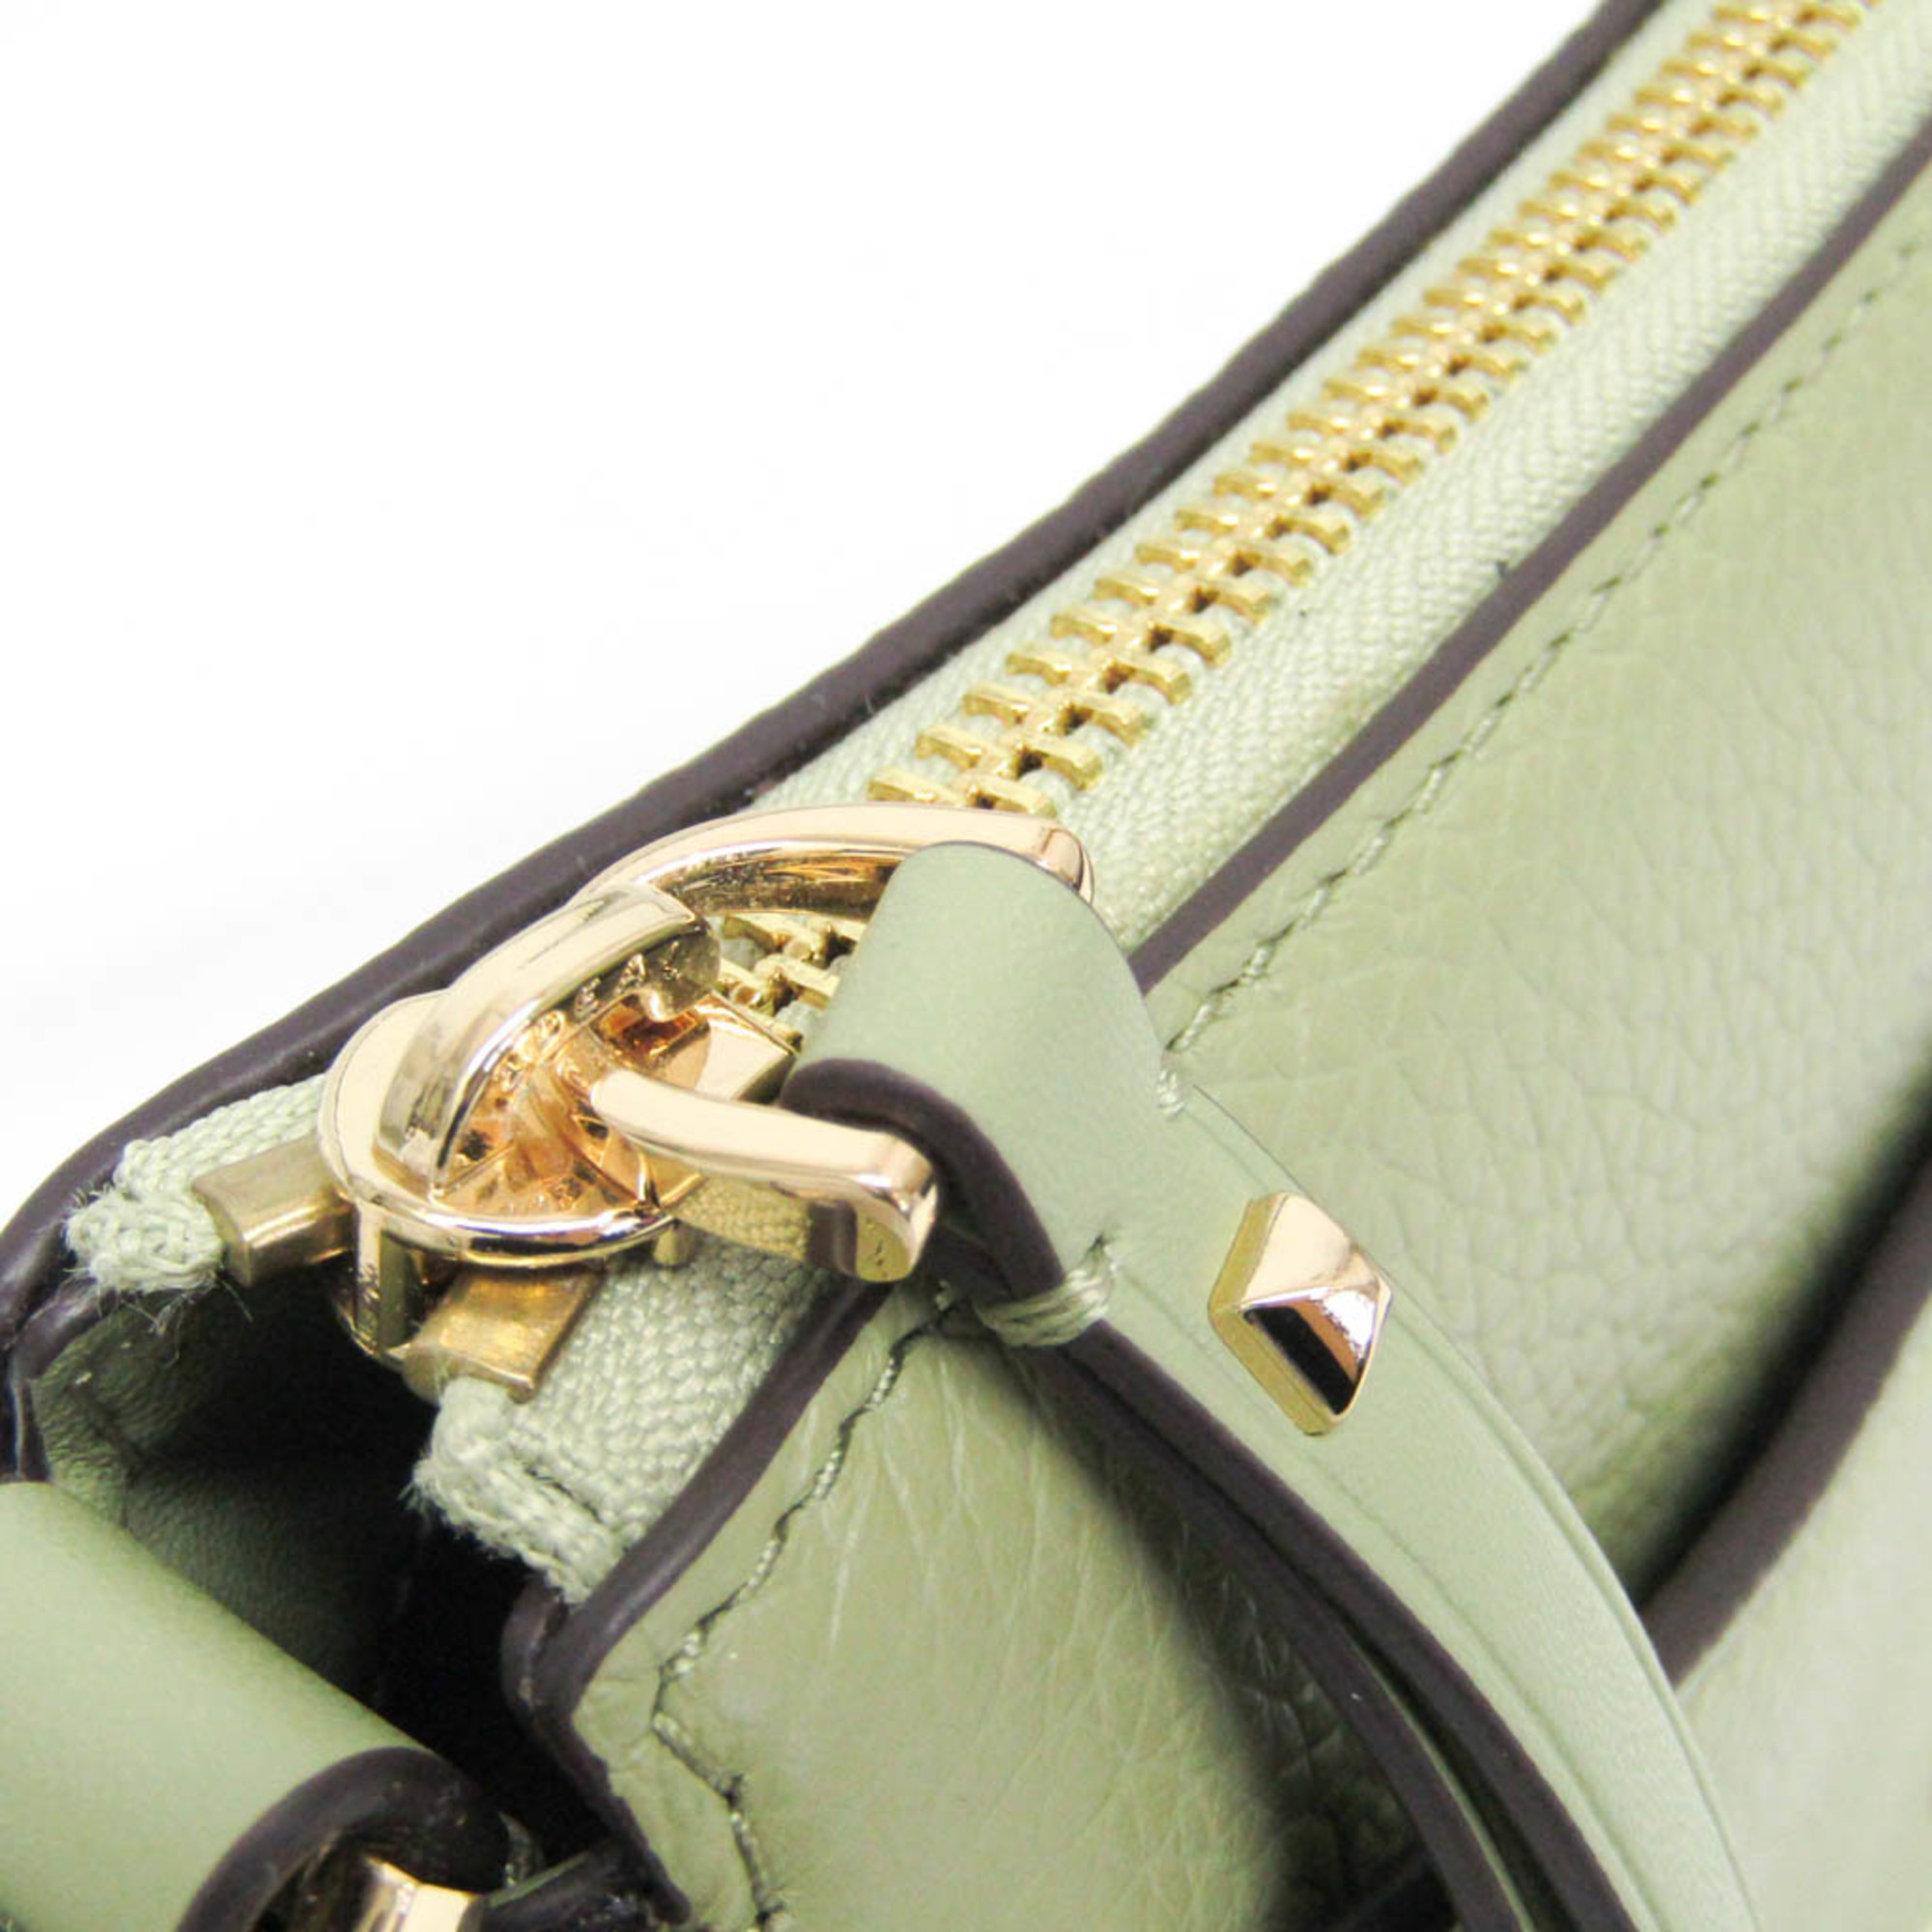 Michael Kors DOVER 35R3G4DC5L Women's Leather Shoulder Bag Green